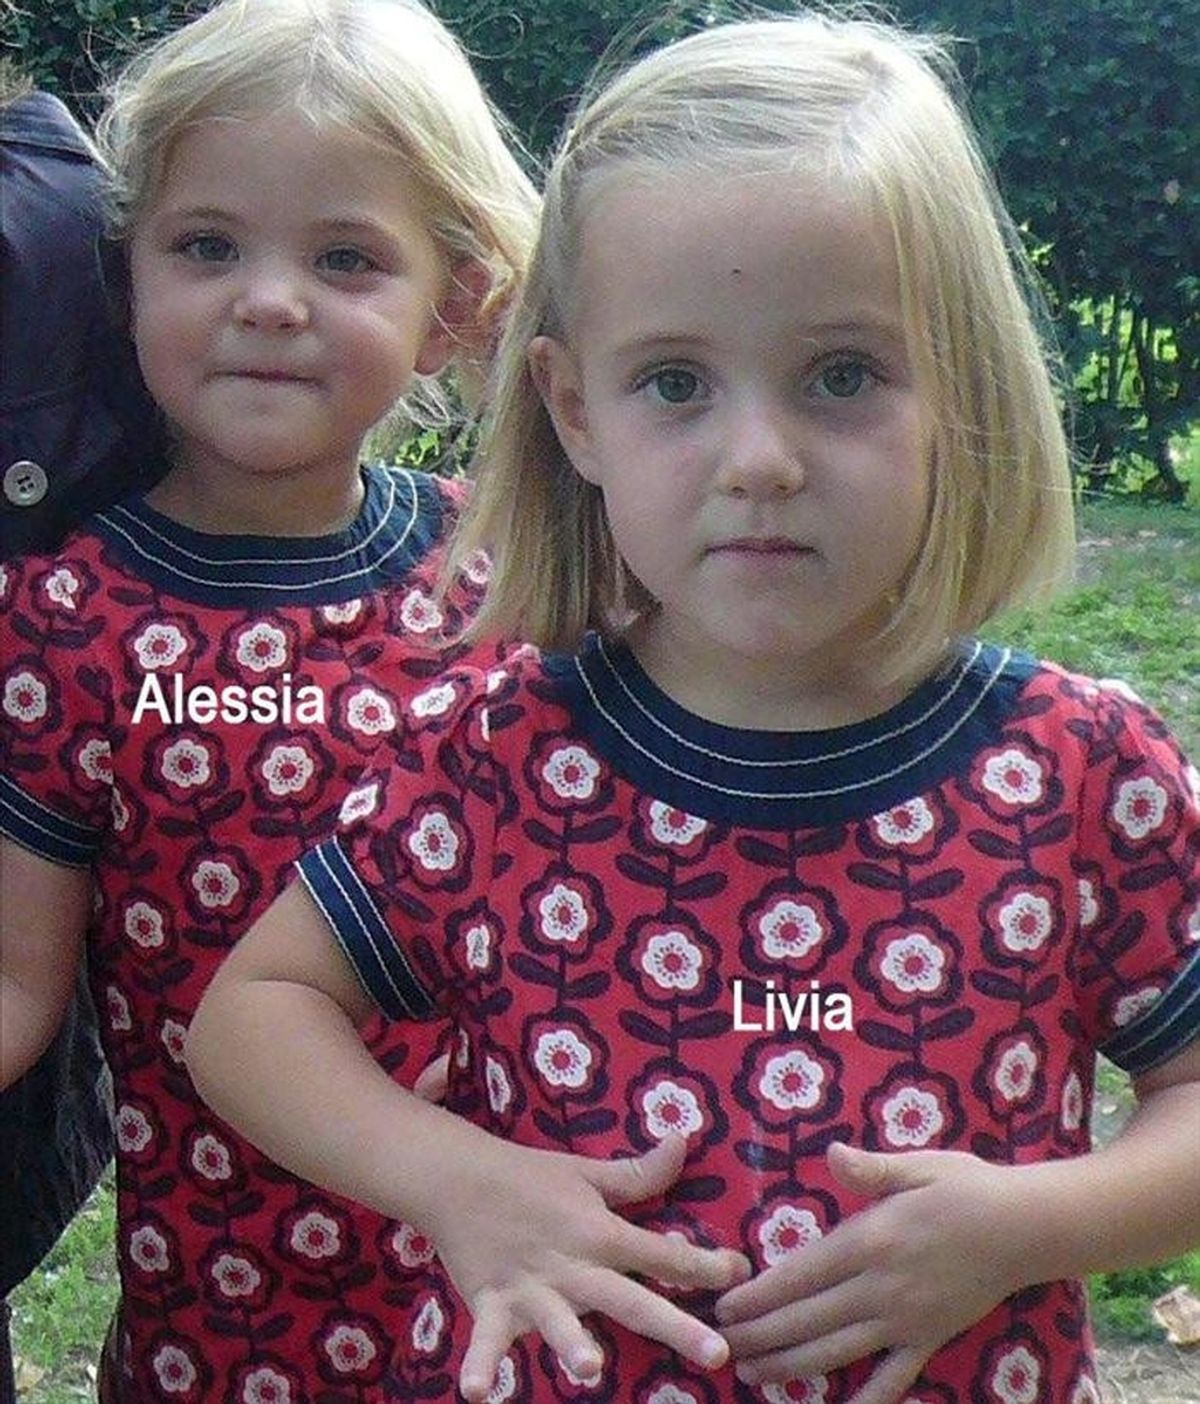 Imagen sin fechar facilitada por la policía del cantón Vadoise ayer, 9 de febrero de 2011, que muestra a las gemelas suizas Alessia (iz) y Livia (d), de seis años, desaparecidas en Italia el pasado 30 de enero. EFE/Policía Cantón Vaudoise